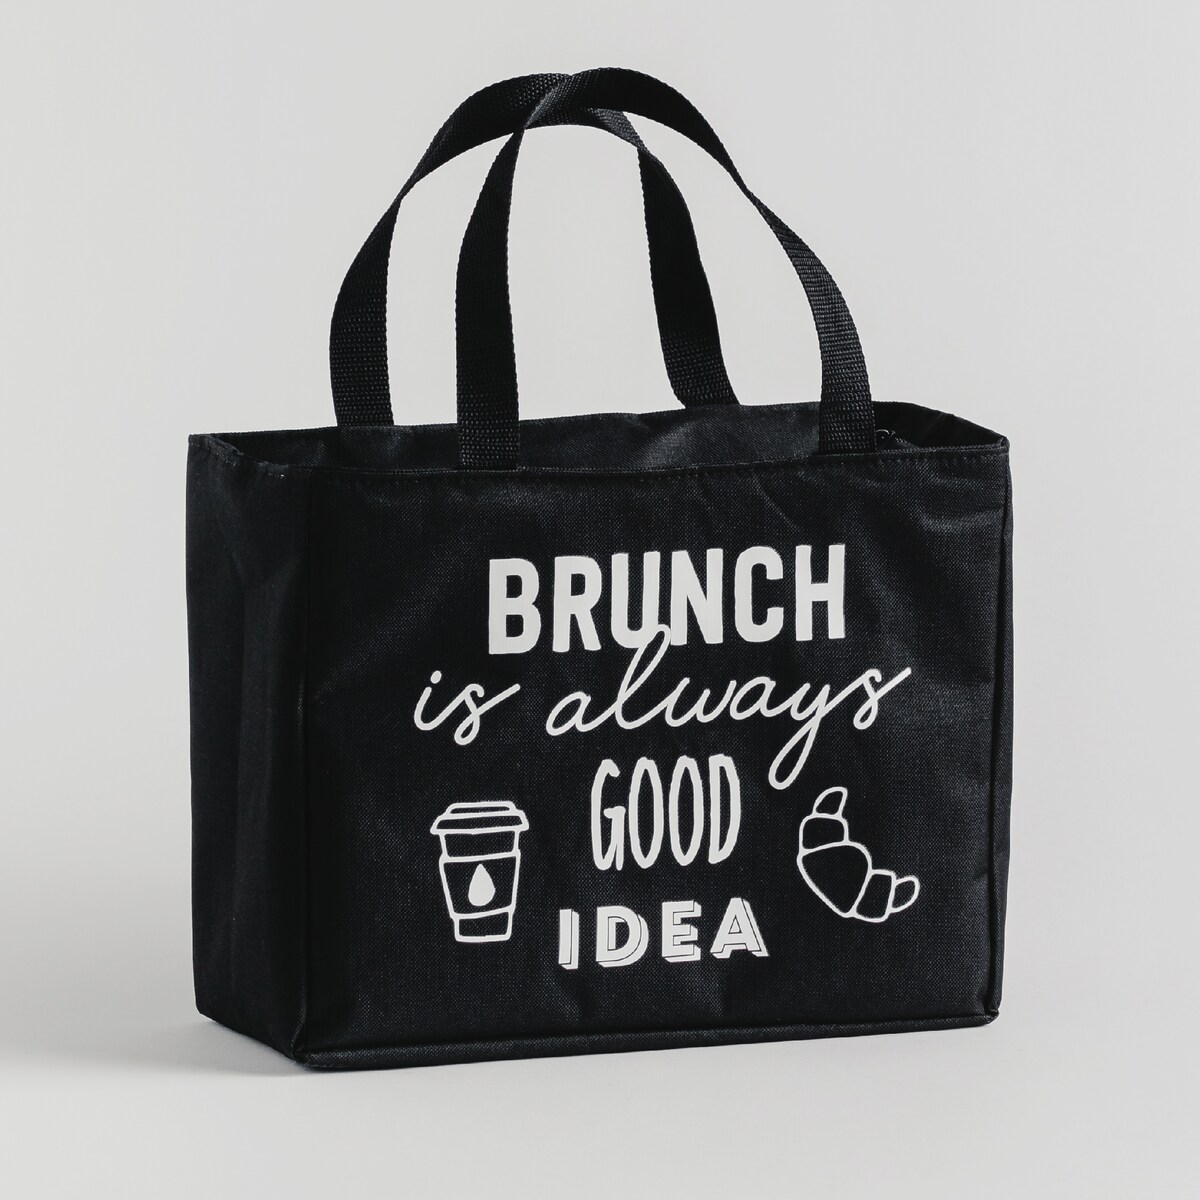 Lunch Bag Bruncher Fit 